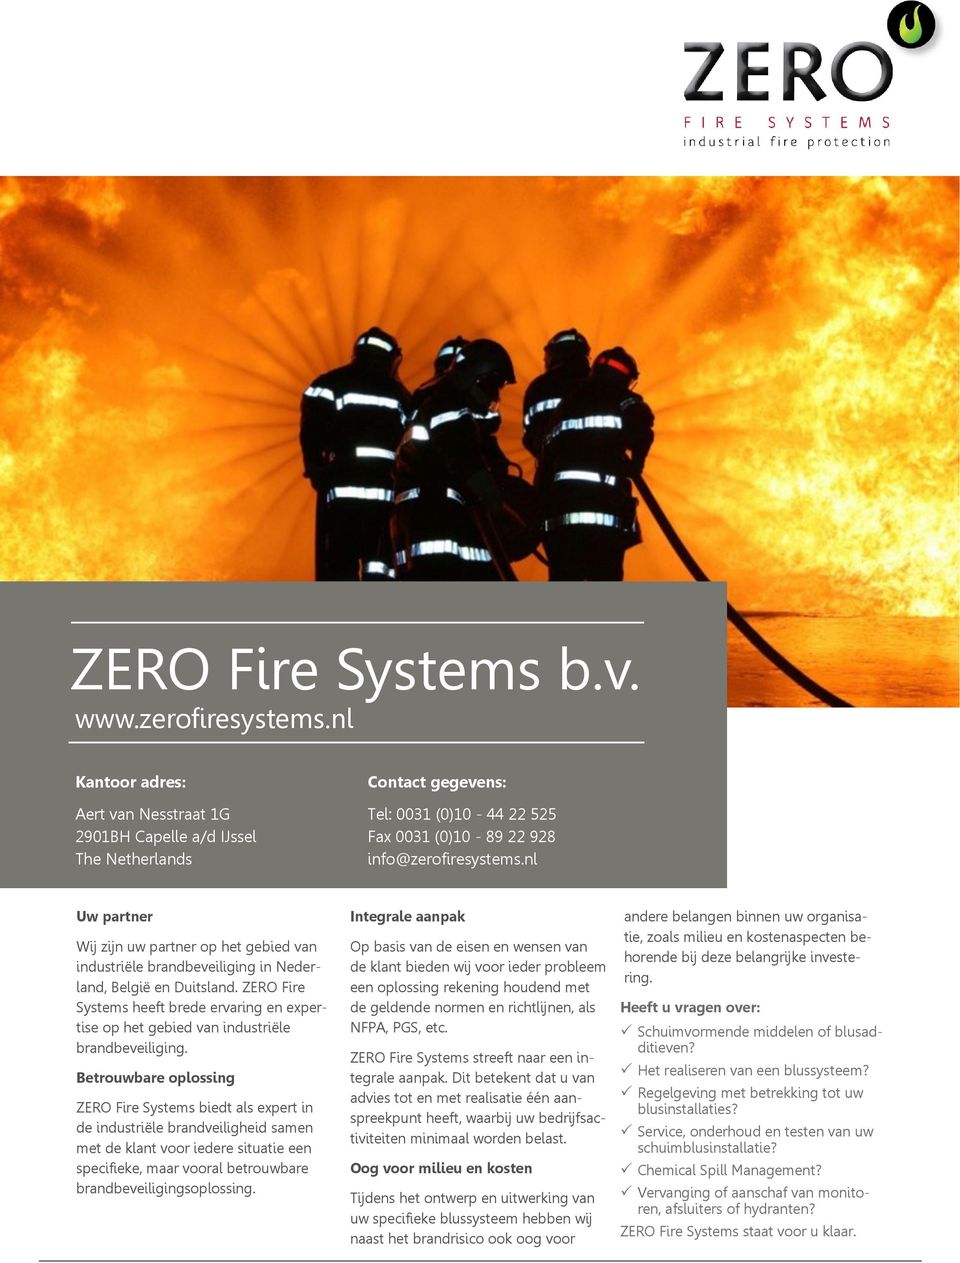 Betrouwbare oplossing ZERO Fire Systems biedt als expert in de industriële brandveiligheid samen met de klant voor iedere situatie een specifieke, maar vooral betrouwbare brandbeveiligingsoplossing.